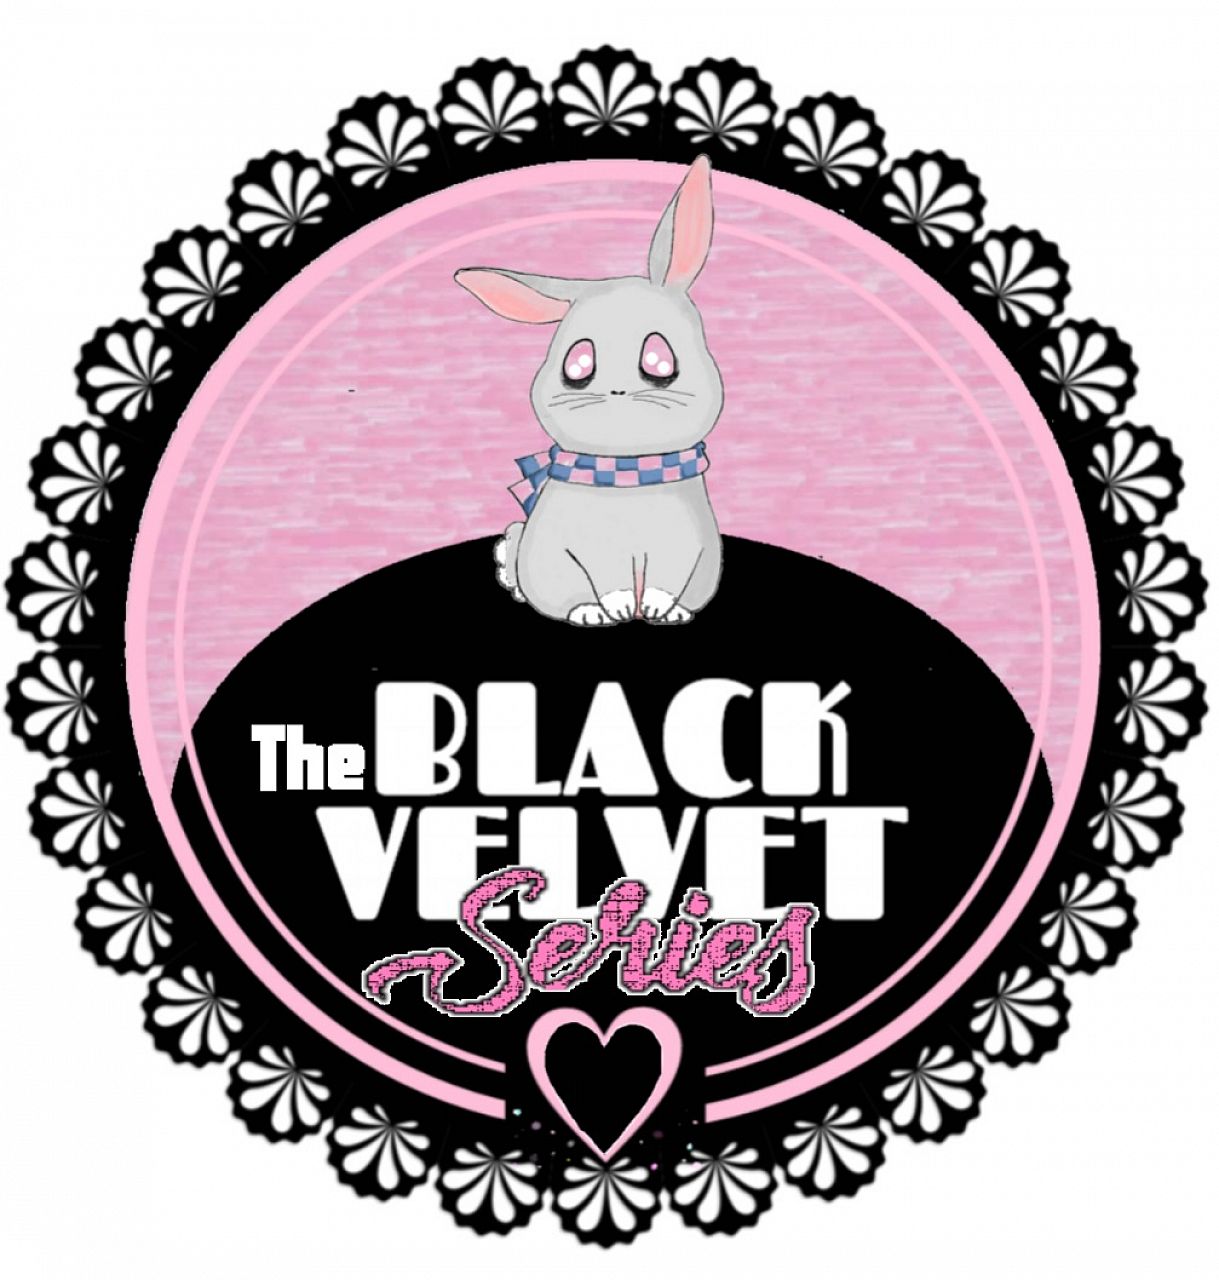 The Black Velvet Series